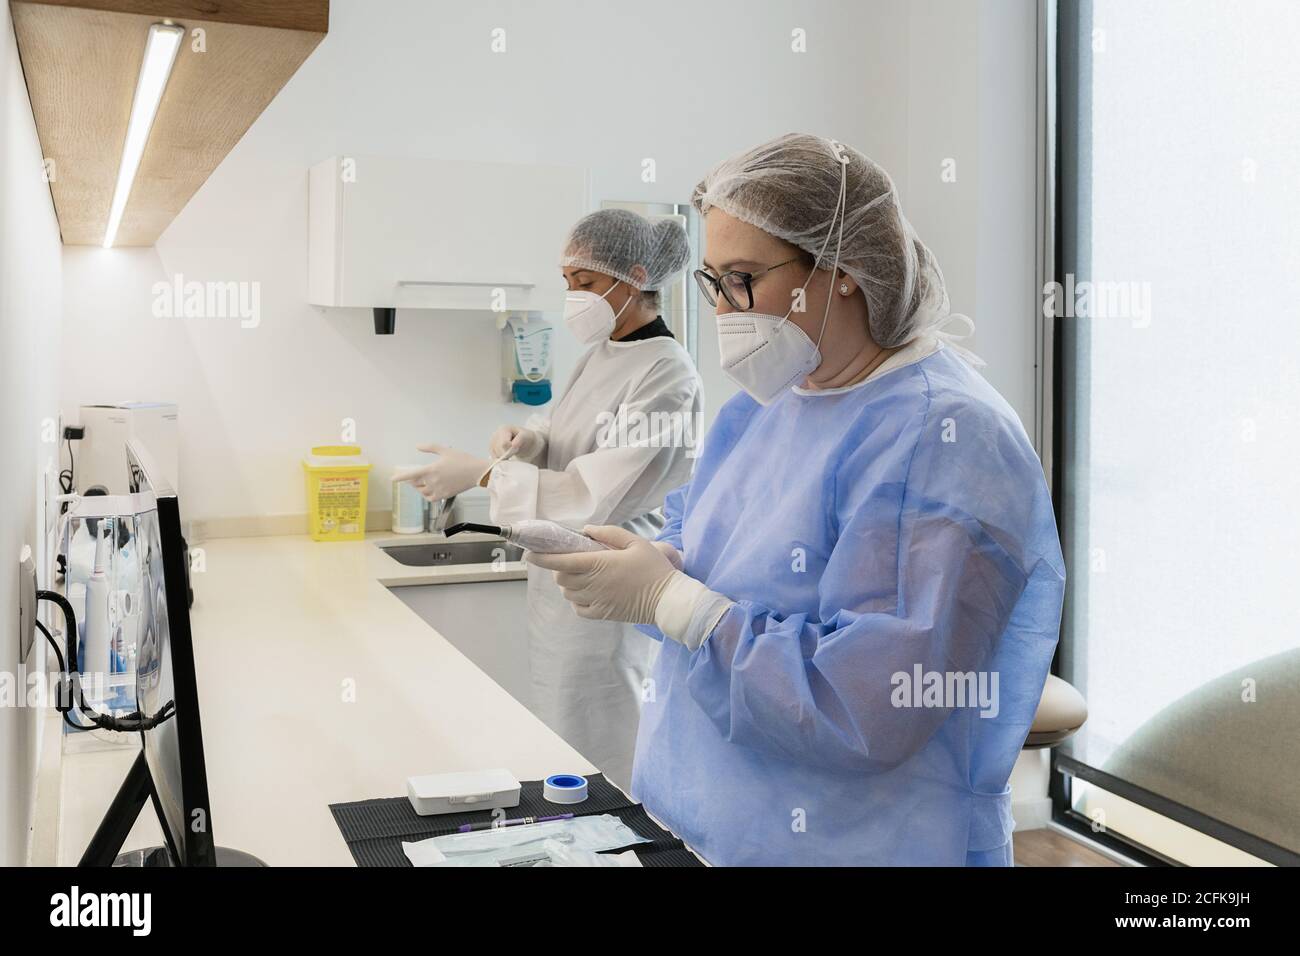 Femmes travailleurs médicaux avec masques de protection pour le visage en se préparant pour procédure médicale à l'hôpital Banque D'Images